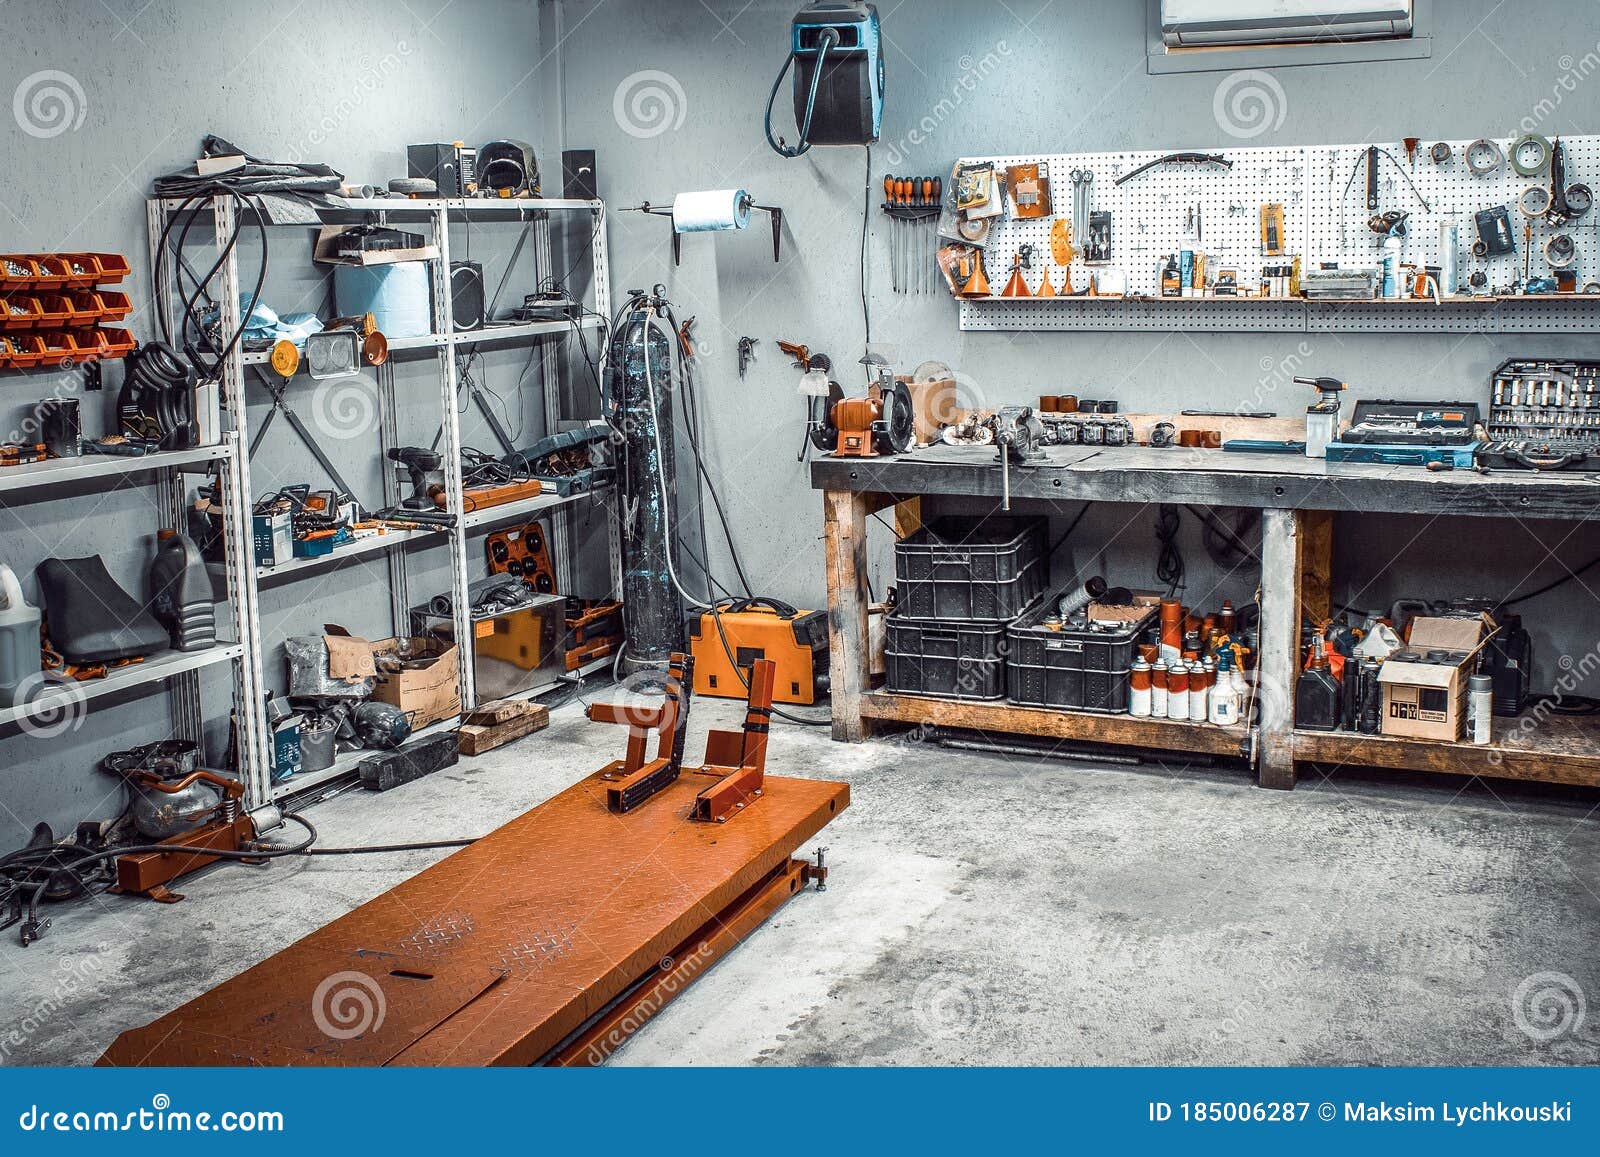 Mesa de trabajo de taller de reparación de automóviles, banco de